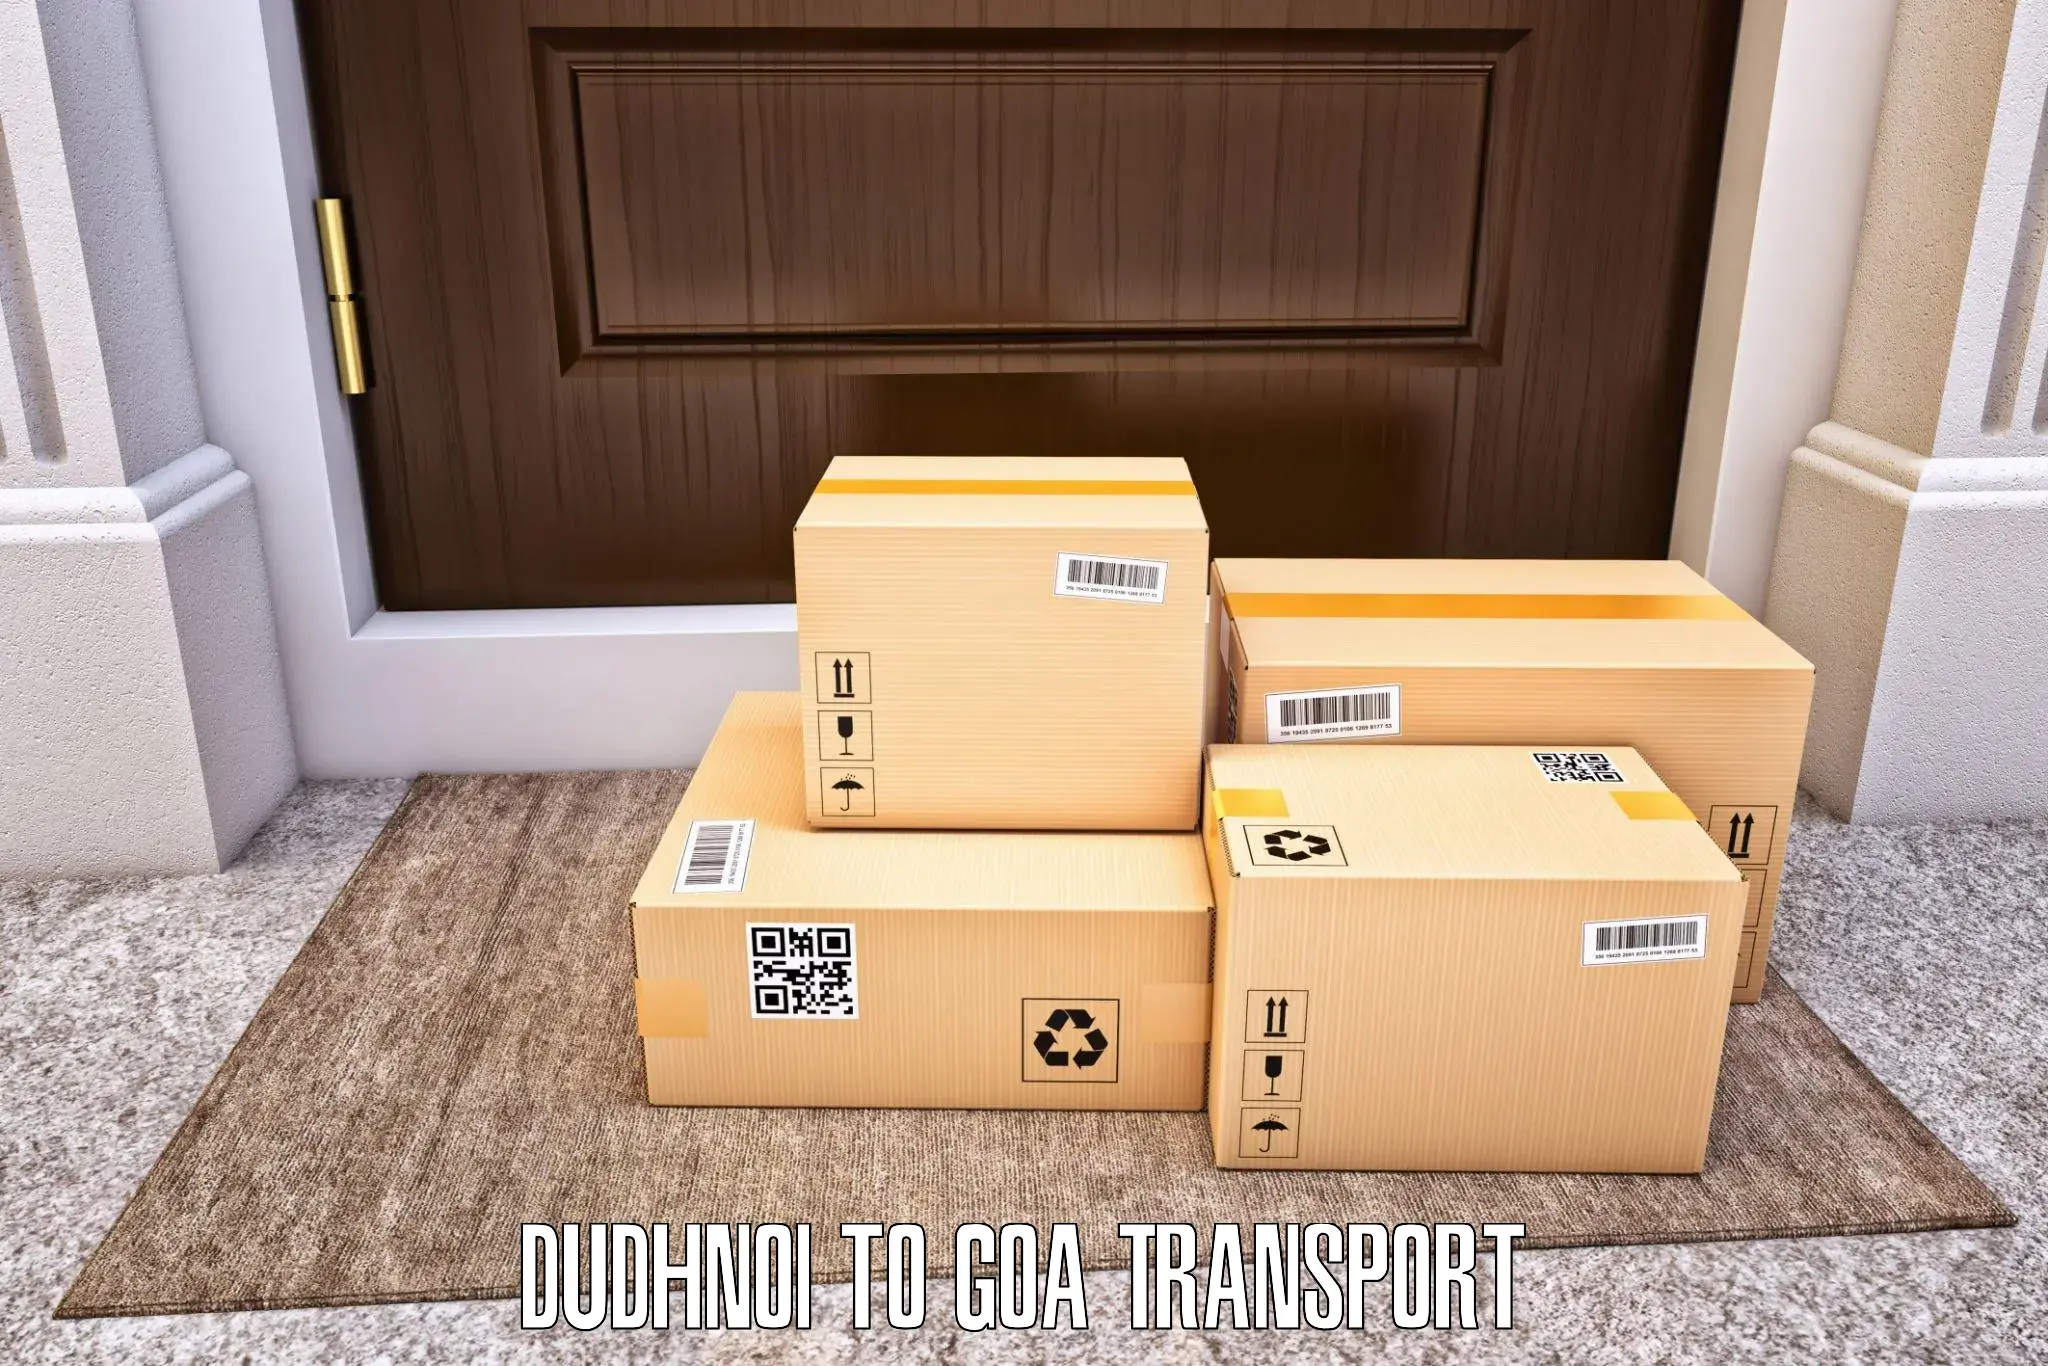 Transportation solution services Dudhnoi to Goa